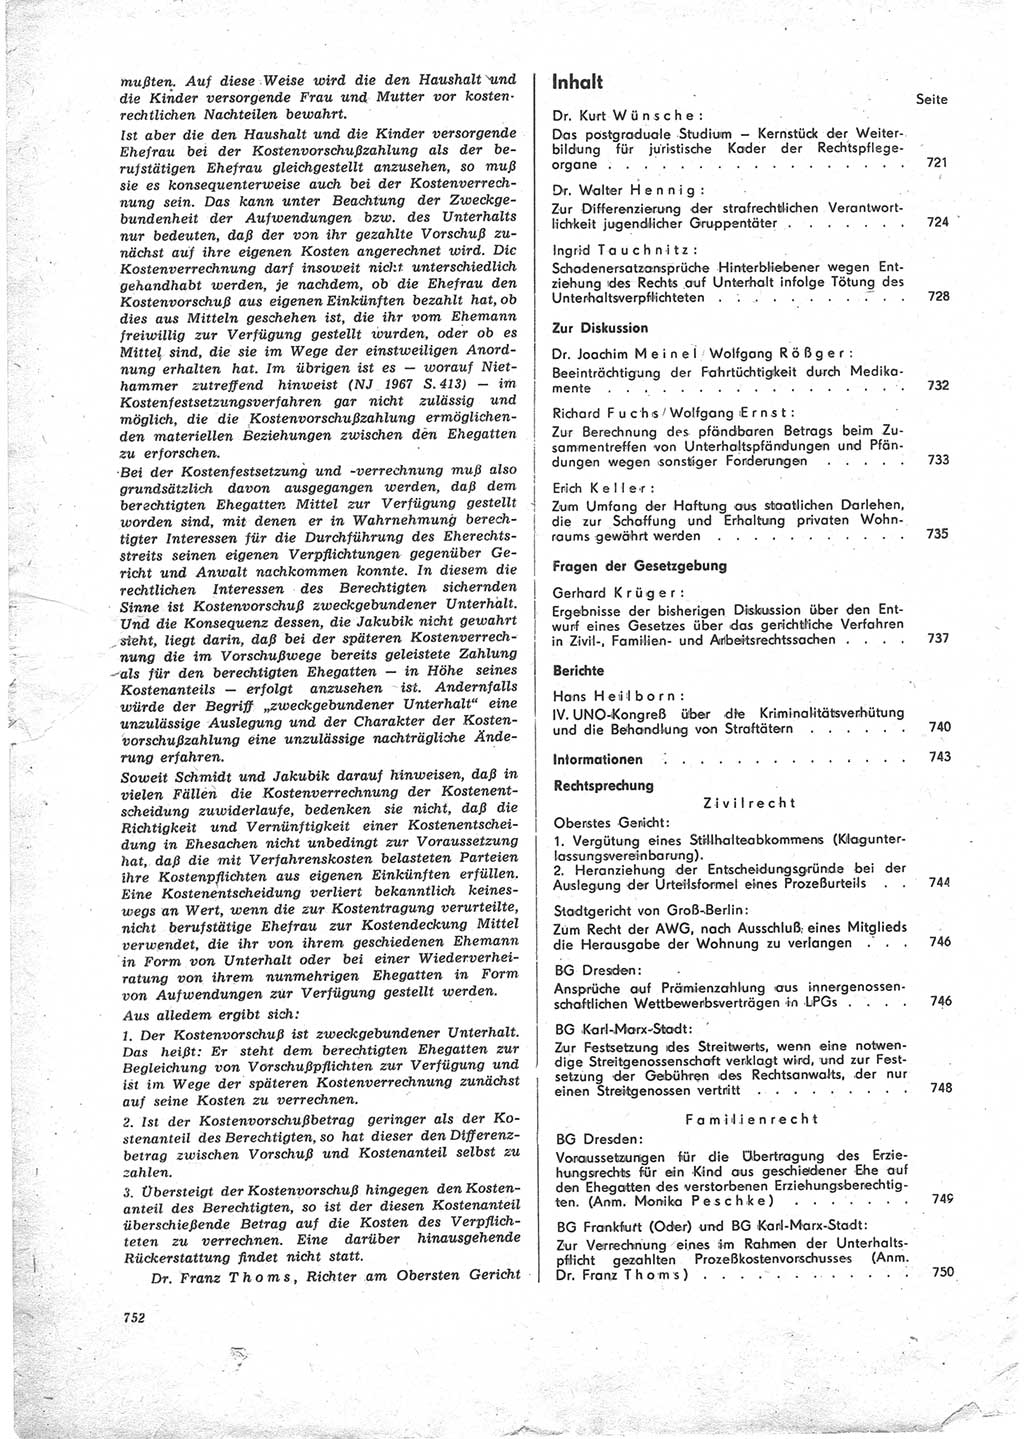 Neue Justiz (NJ), Zeitschrift für Recht und Rechtswissenschaft [Deutsche Demokratische Republik (DDR)], 24. Jahrgang 1970, Seite 752 (NJ DDR 1970, S. 752)